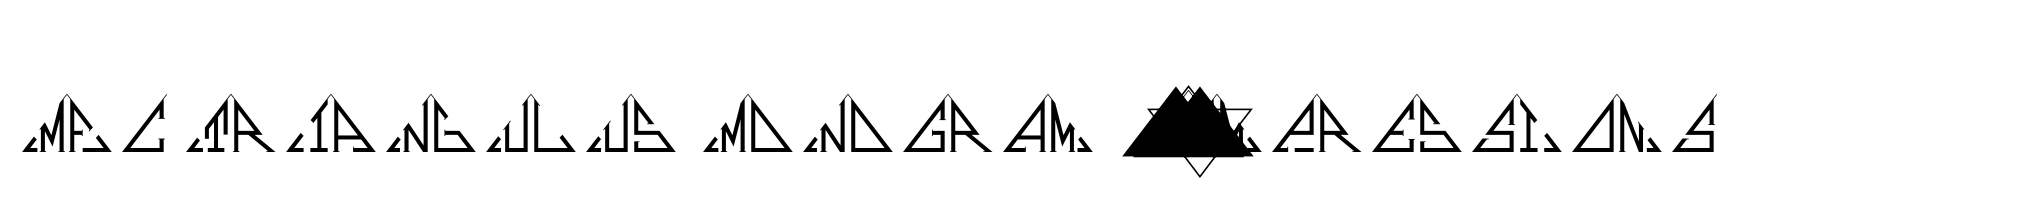 MFC Triangulus Monogram 250 Impressions image